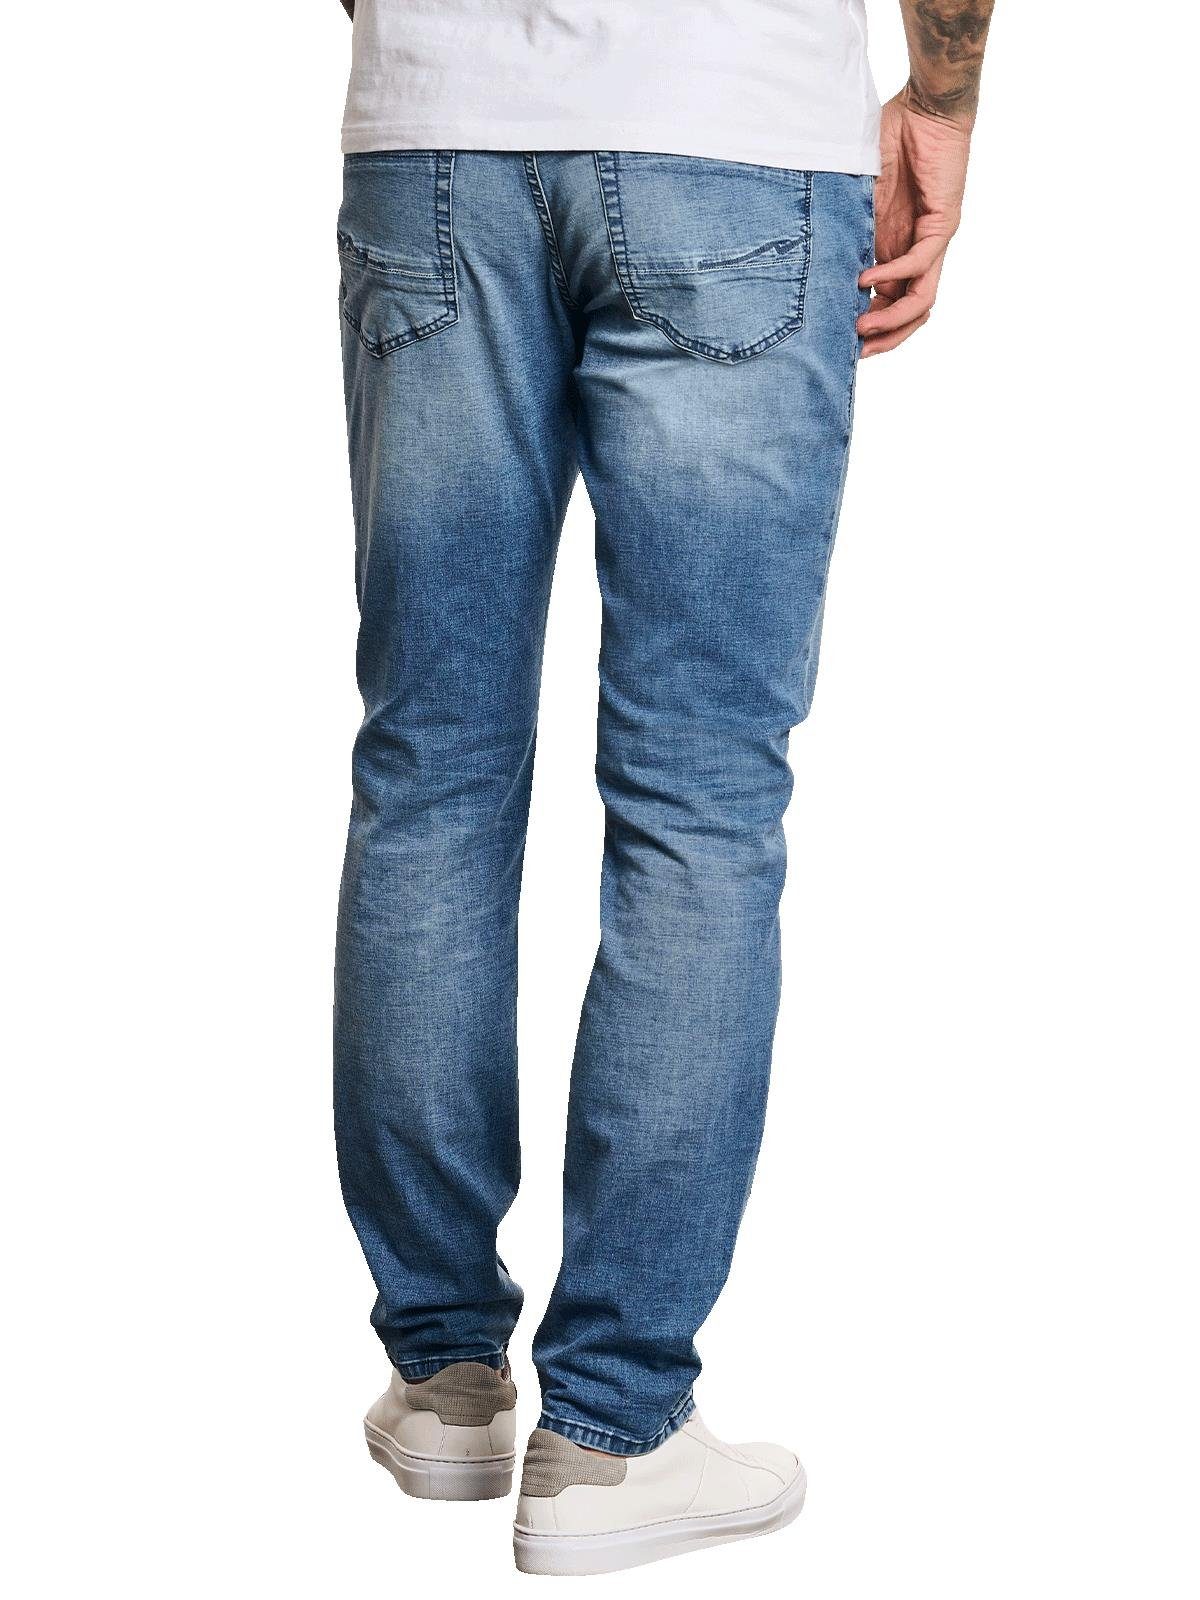 Herren Jeans emilio adani Stretch-Jeans Super-Stretch-Jeans slim fit